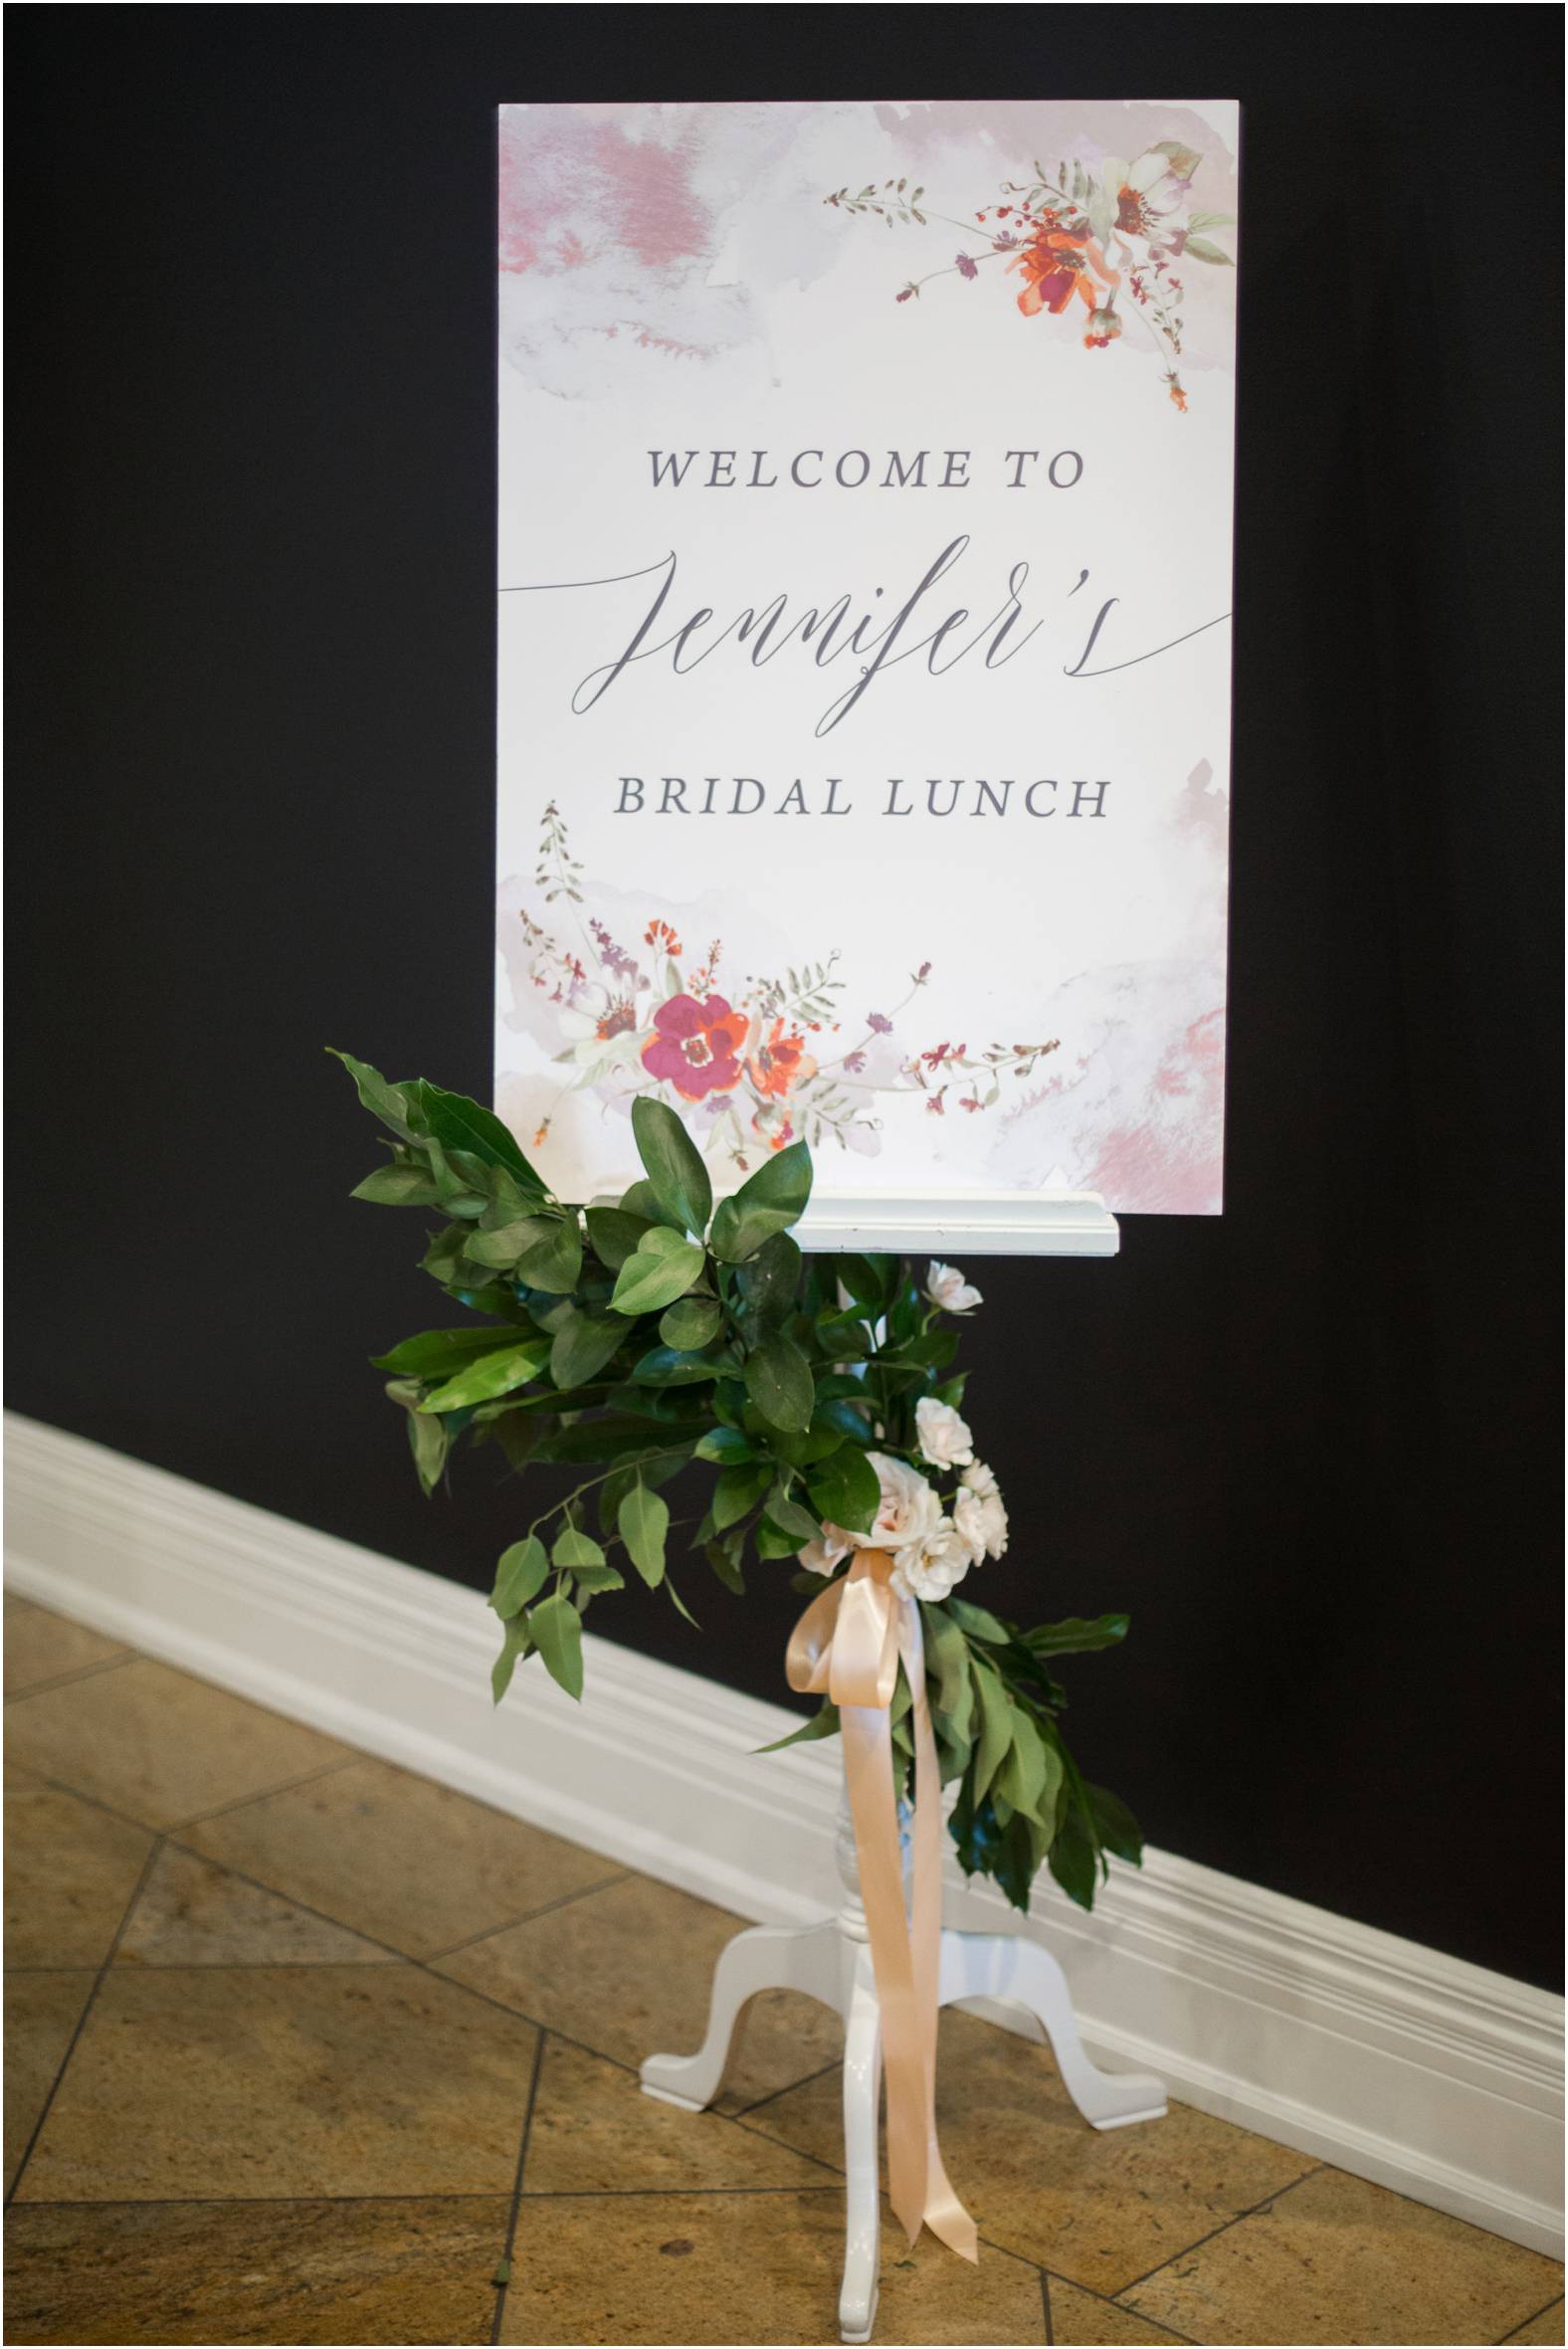 Welcome Sign for spring inspired bridal brunch